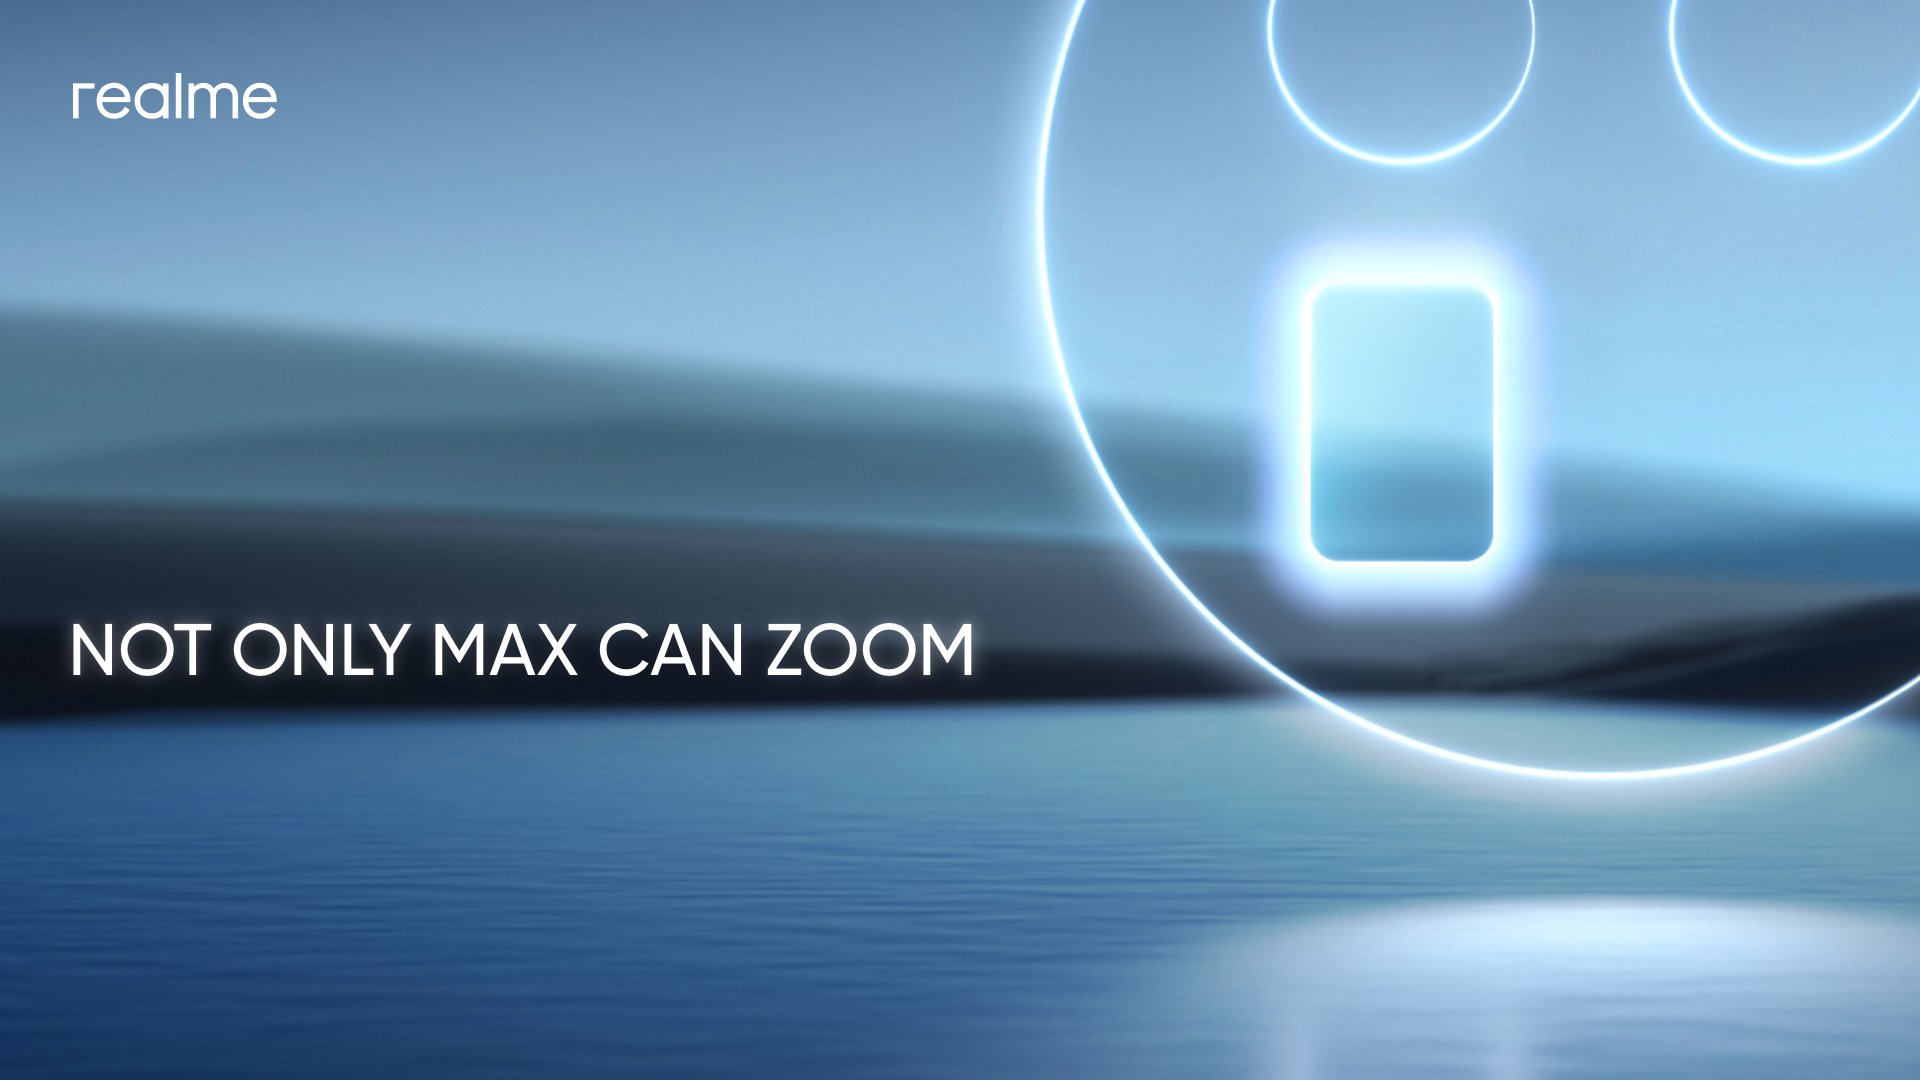 Efterfølgeren til realme X3 SuperZoom? realme forbereder sig på at lancere en smartphone med periskopkamera